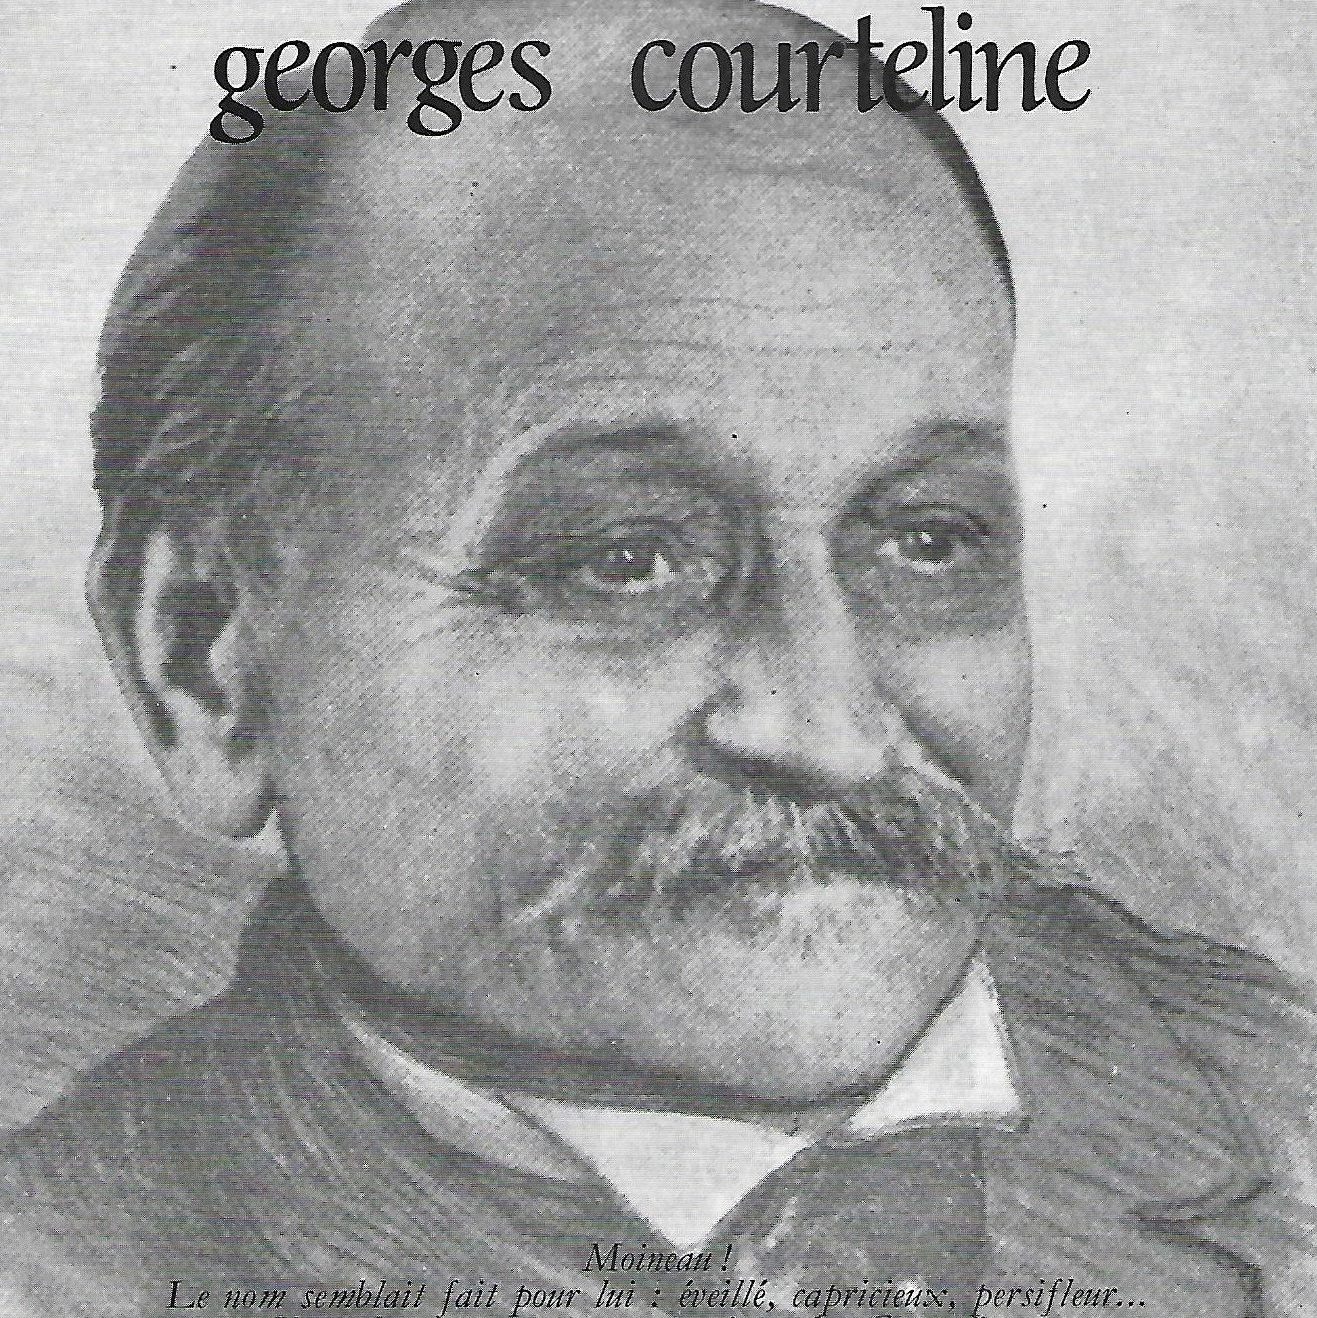 georges-courteline-1